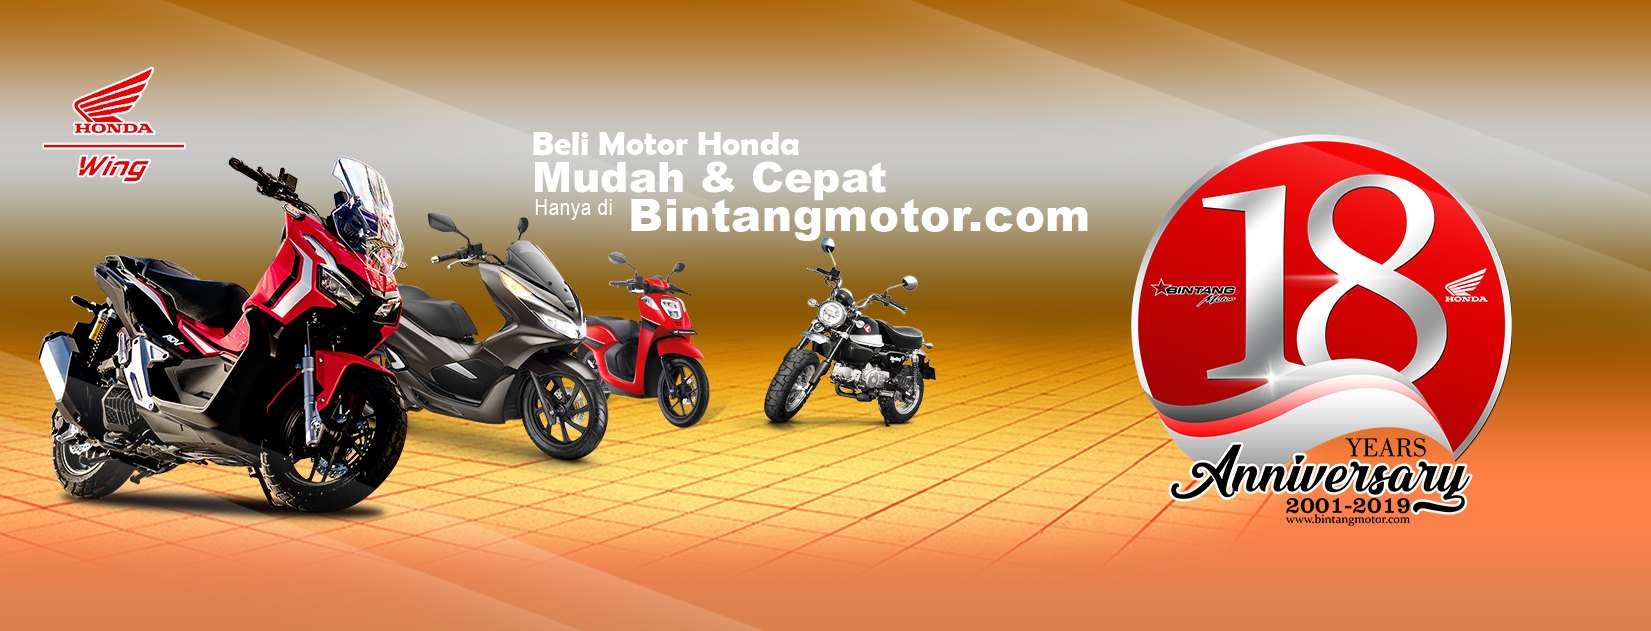 Honda Bintang Motor Kredit Motor Honda Murah